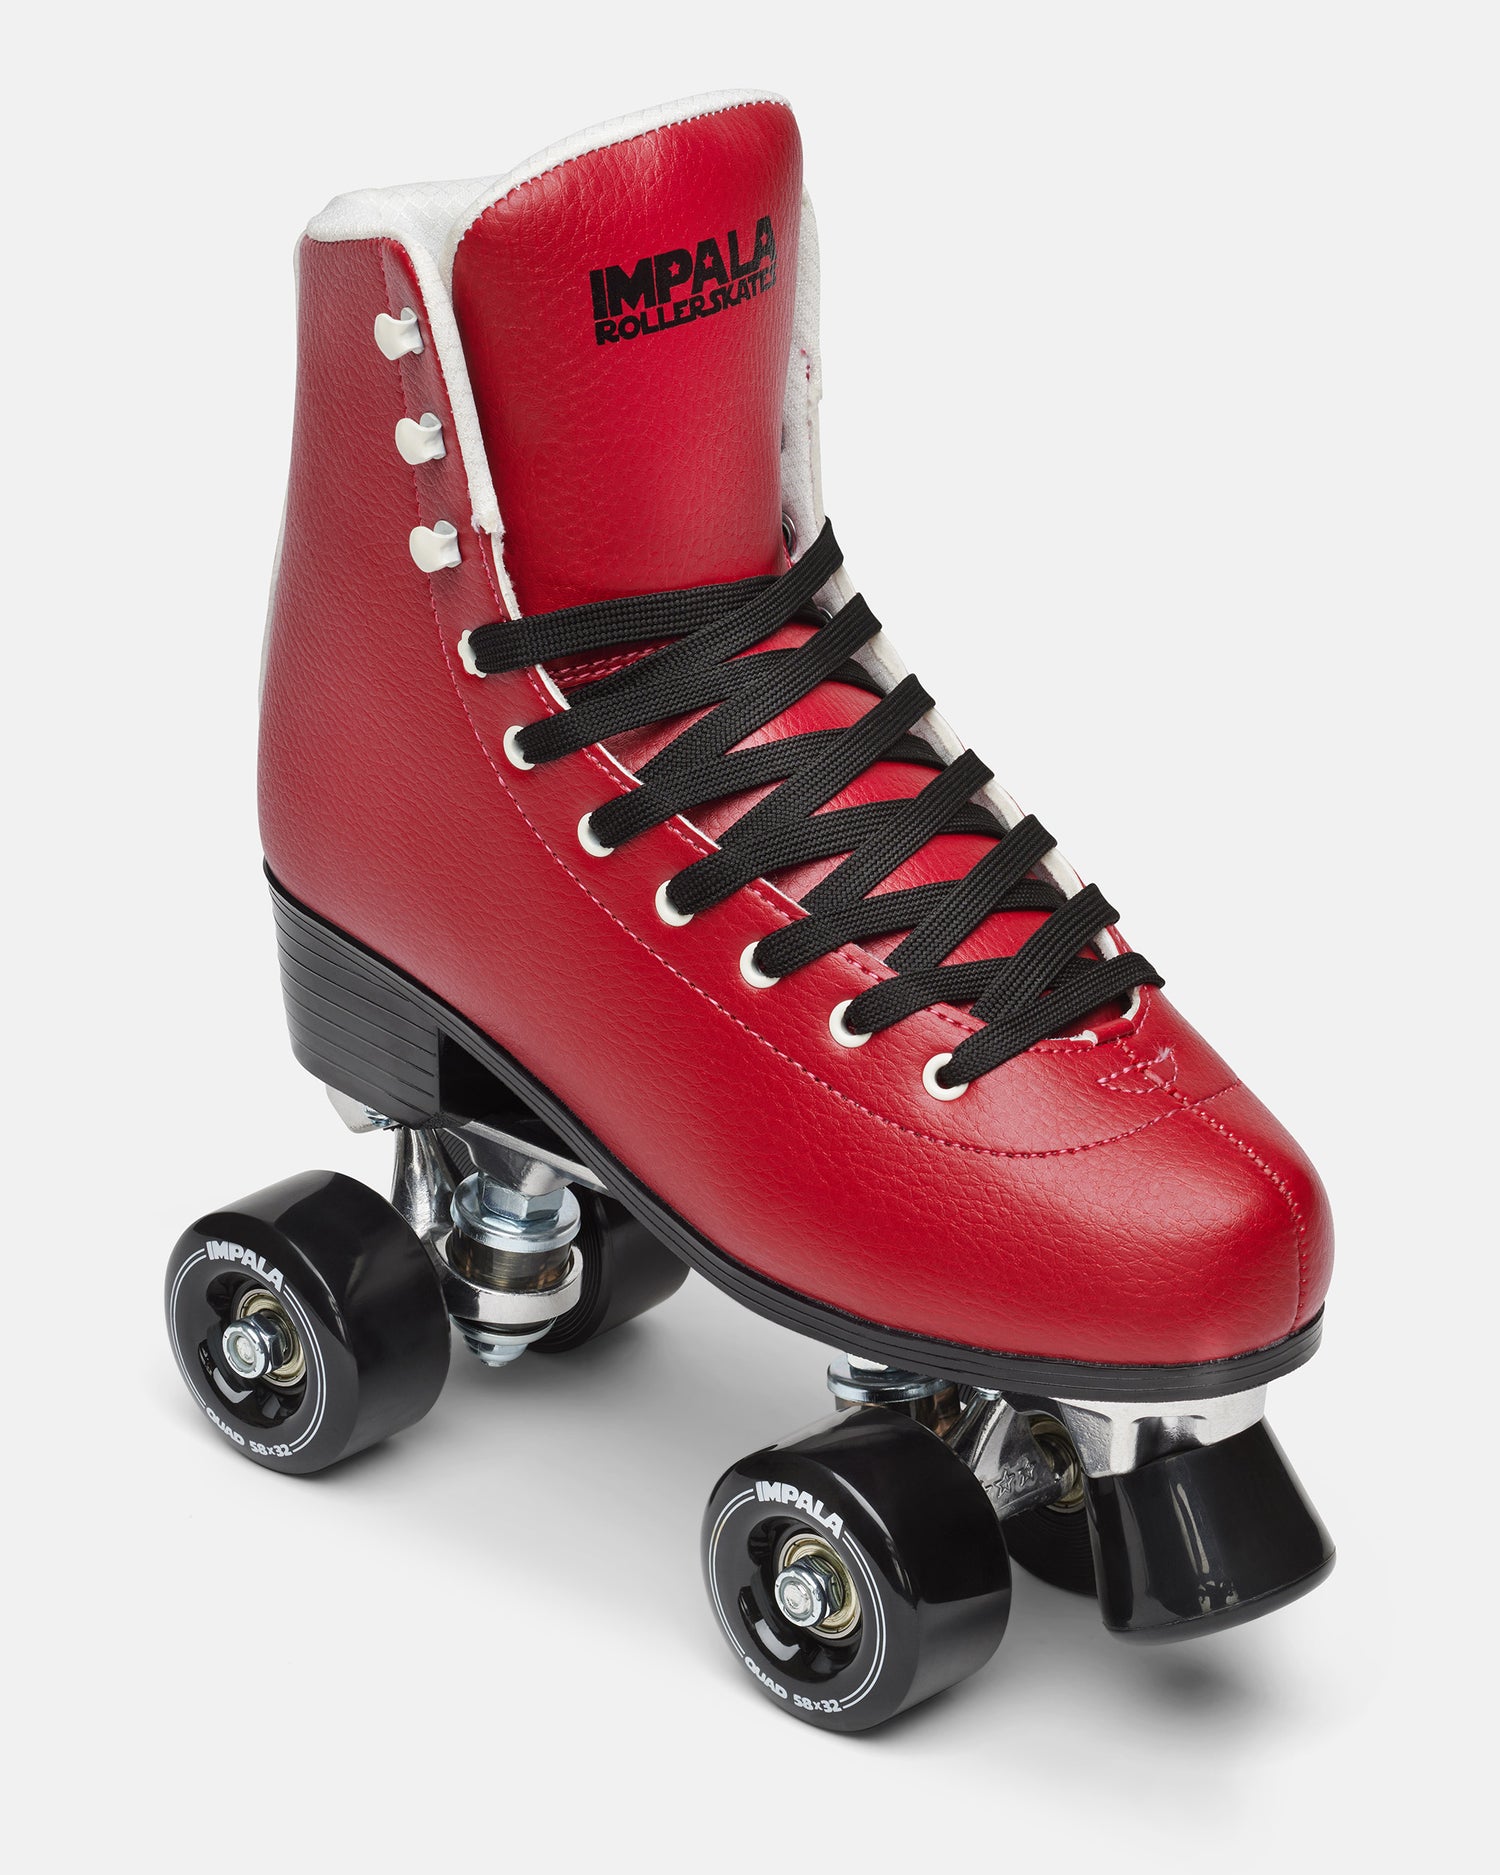 Adult Roller Skates